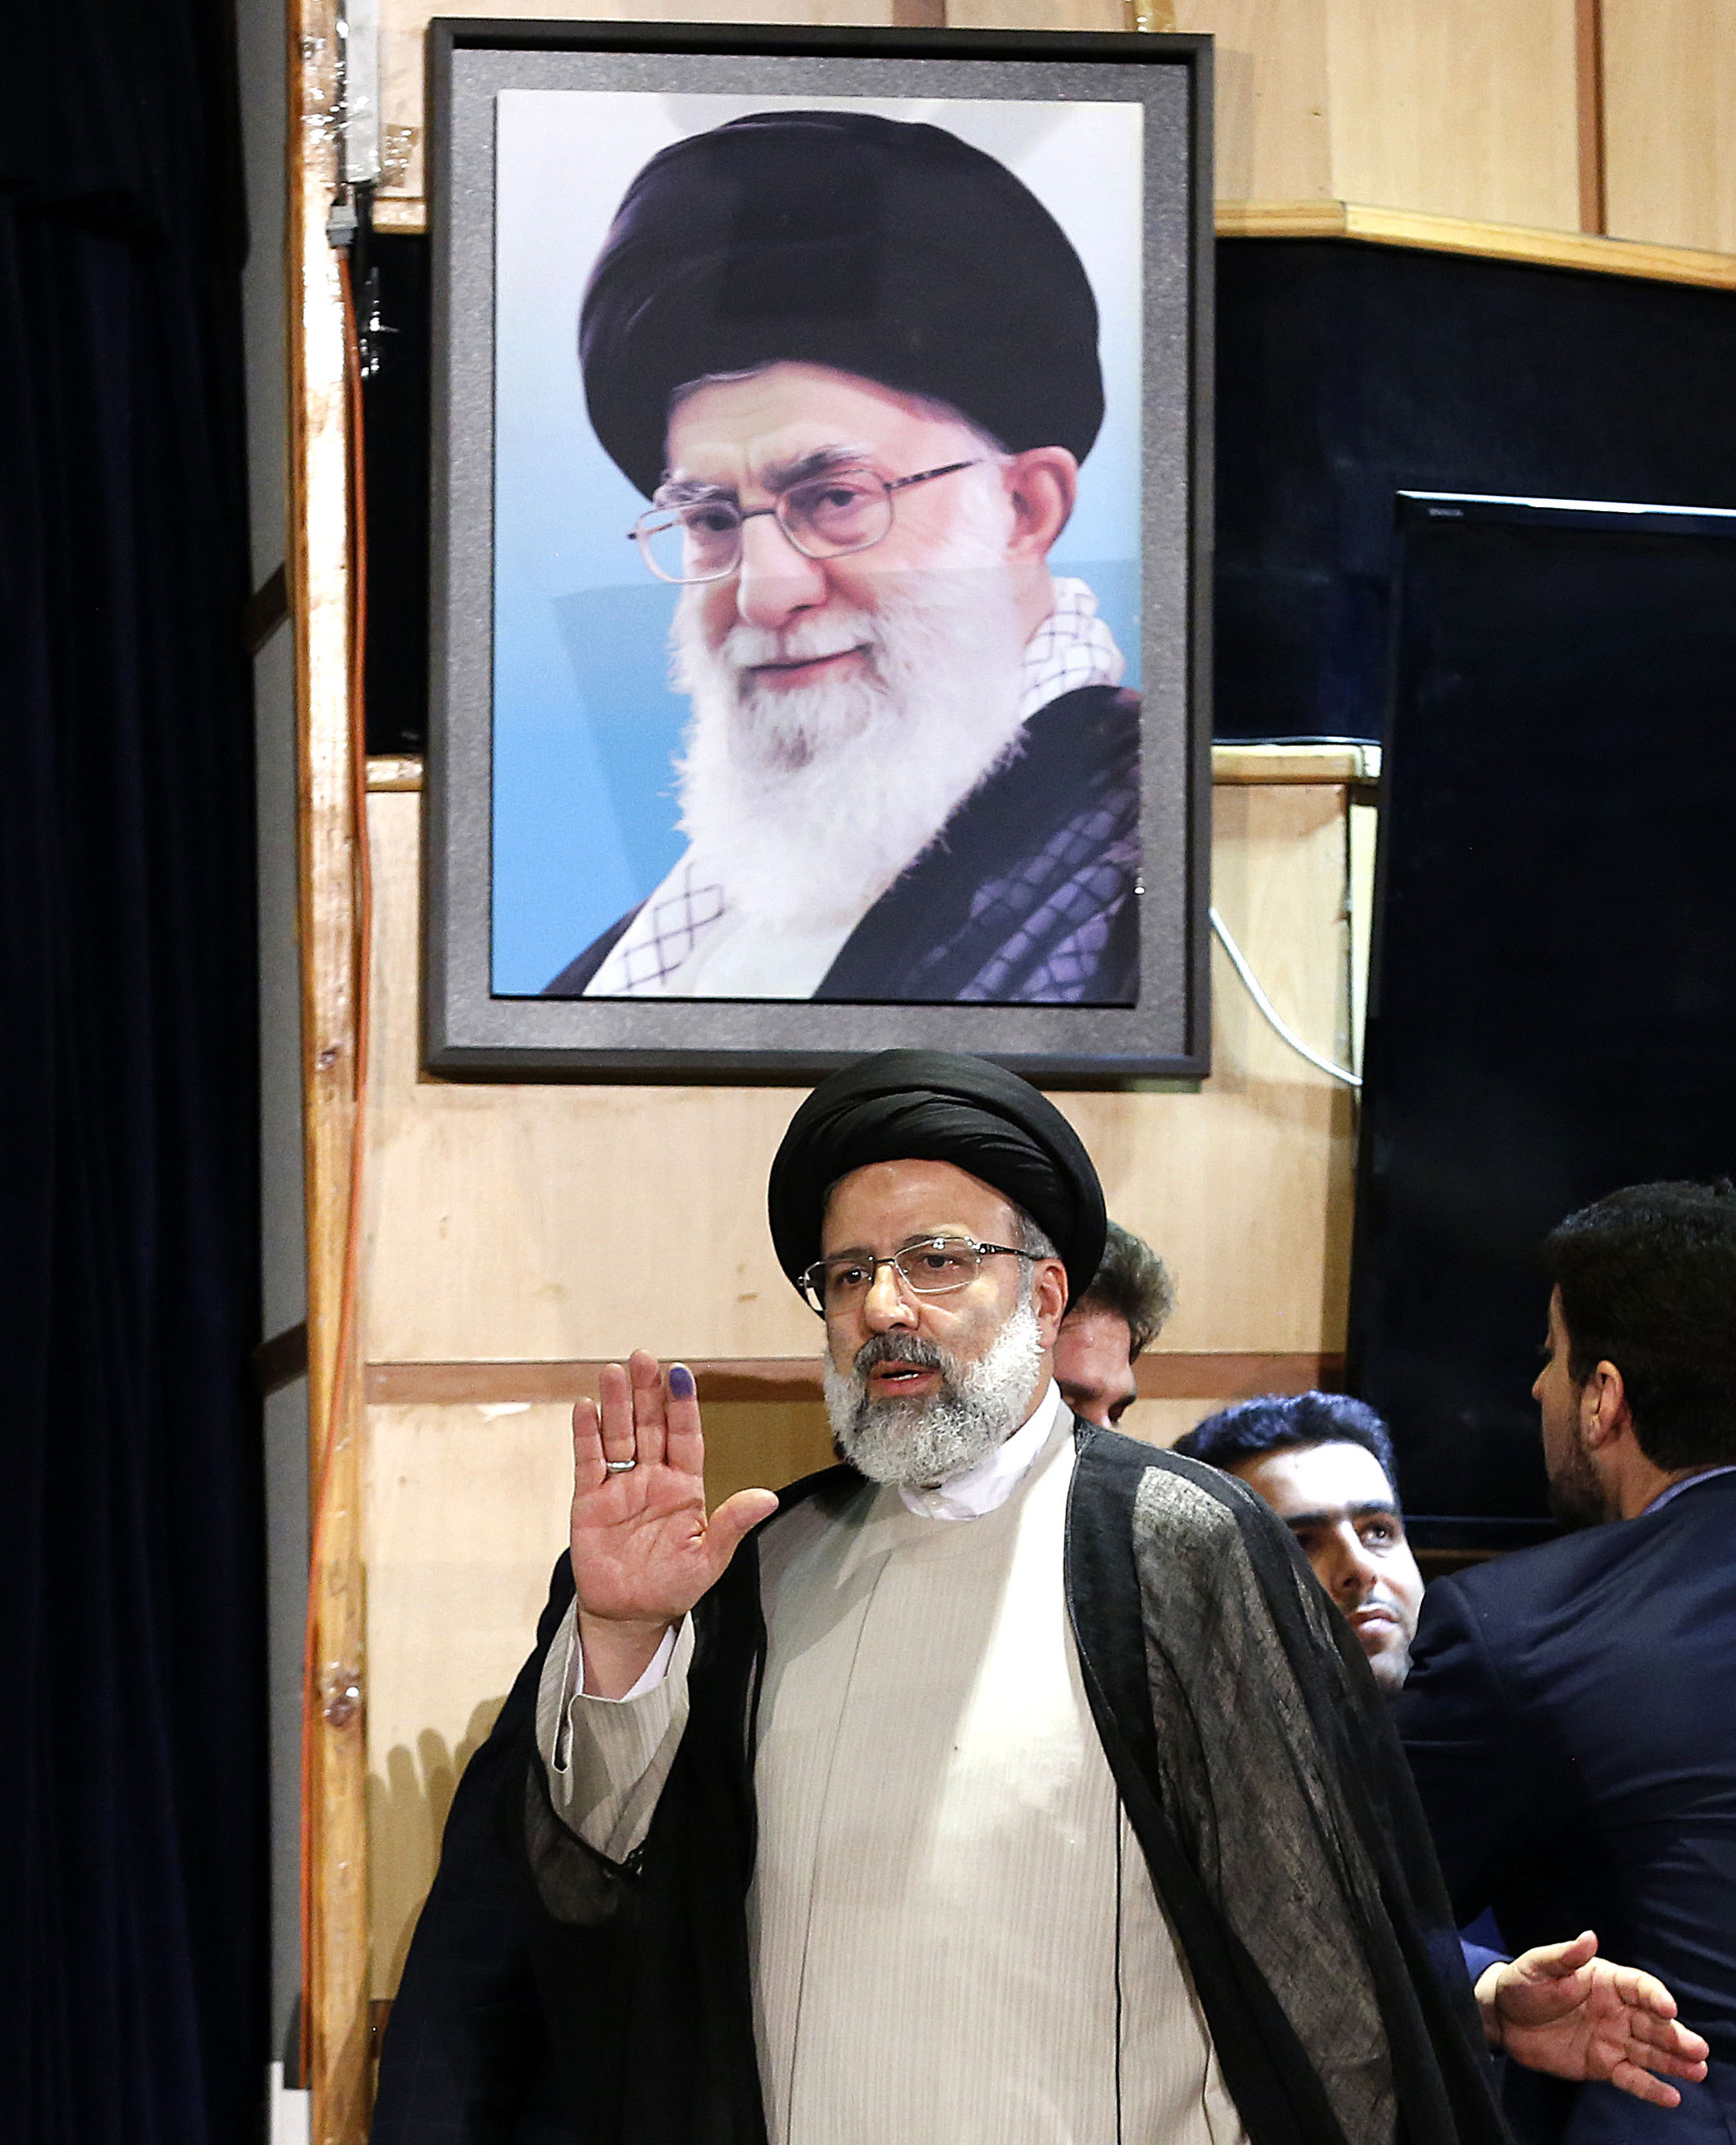 المرشح الايرانى إبراهيم رايسي على صورة للمرشد الأعلى الإيراني آية الله علي خامنئي بعد تسجيل ترشيحه للانتخابات الرئاسية المقبلة